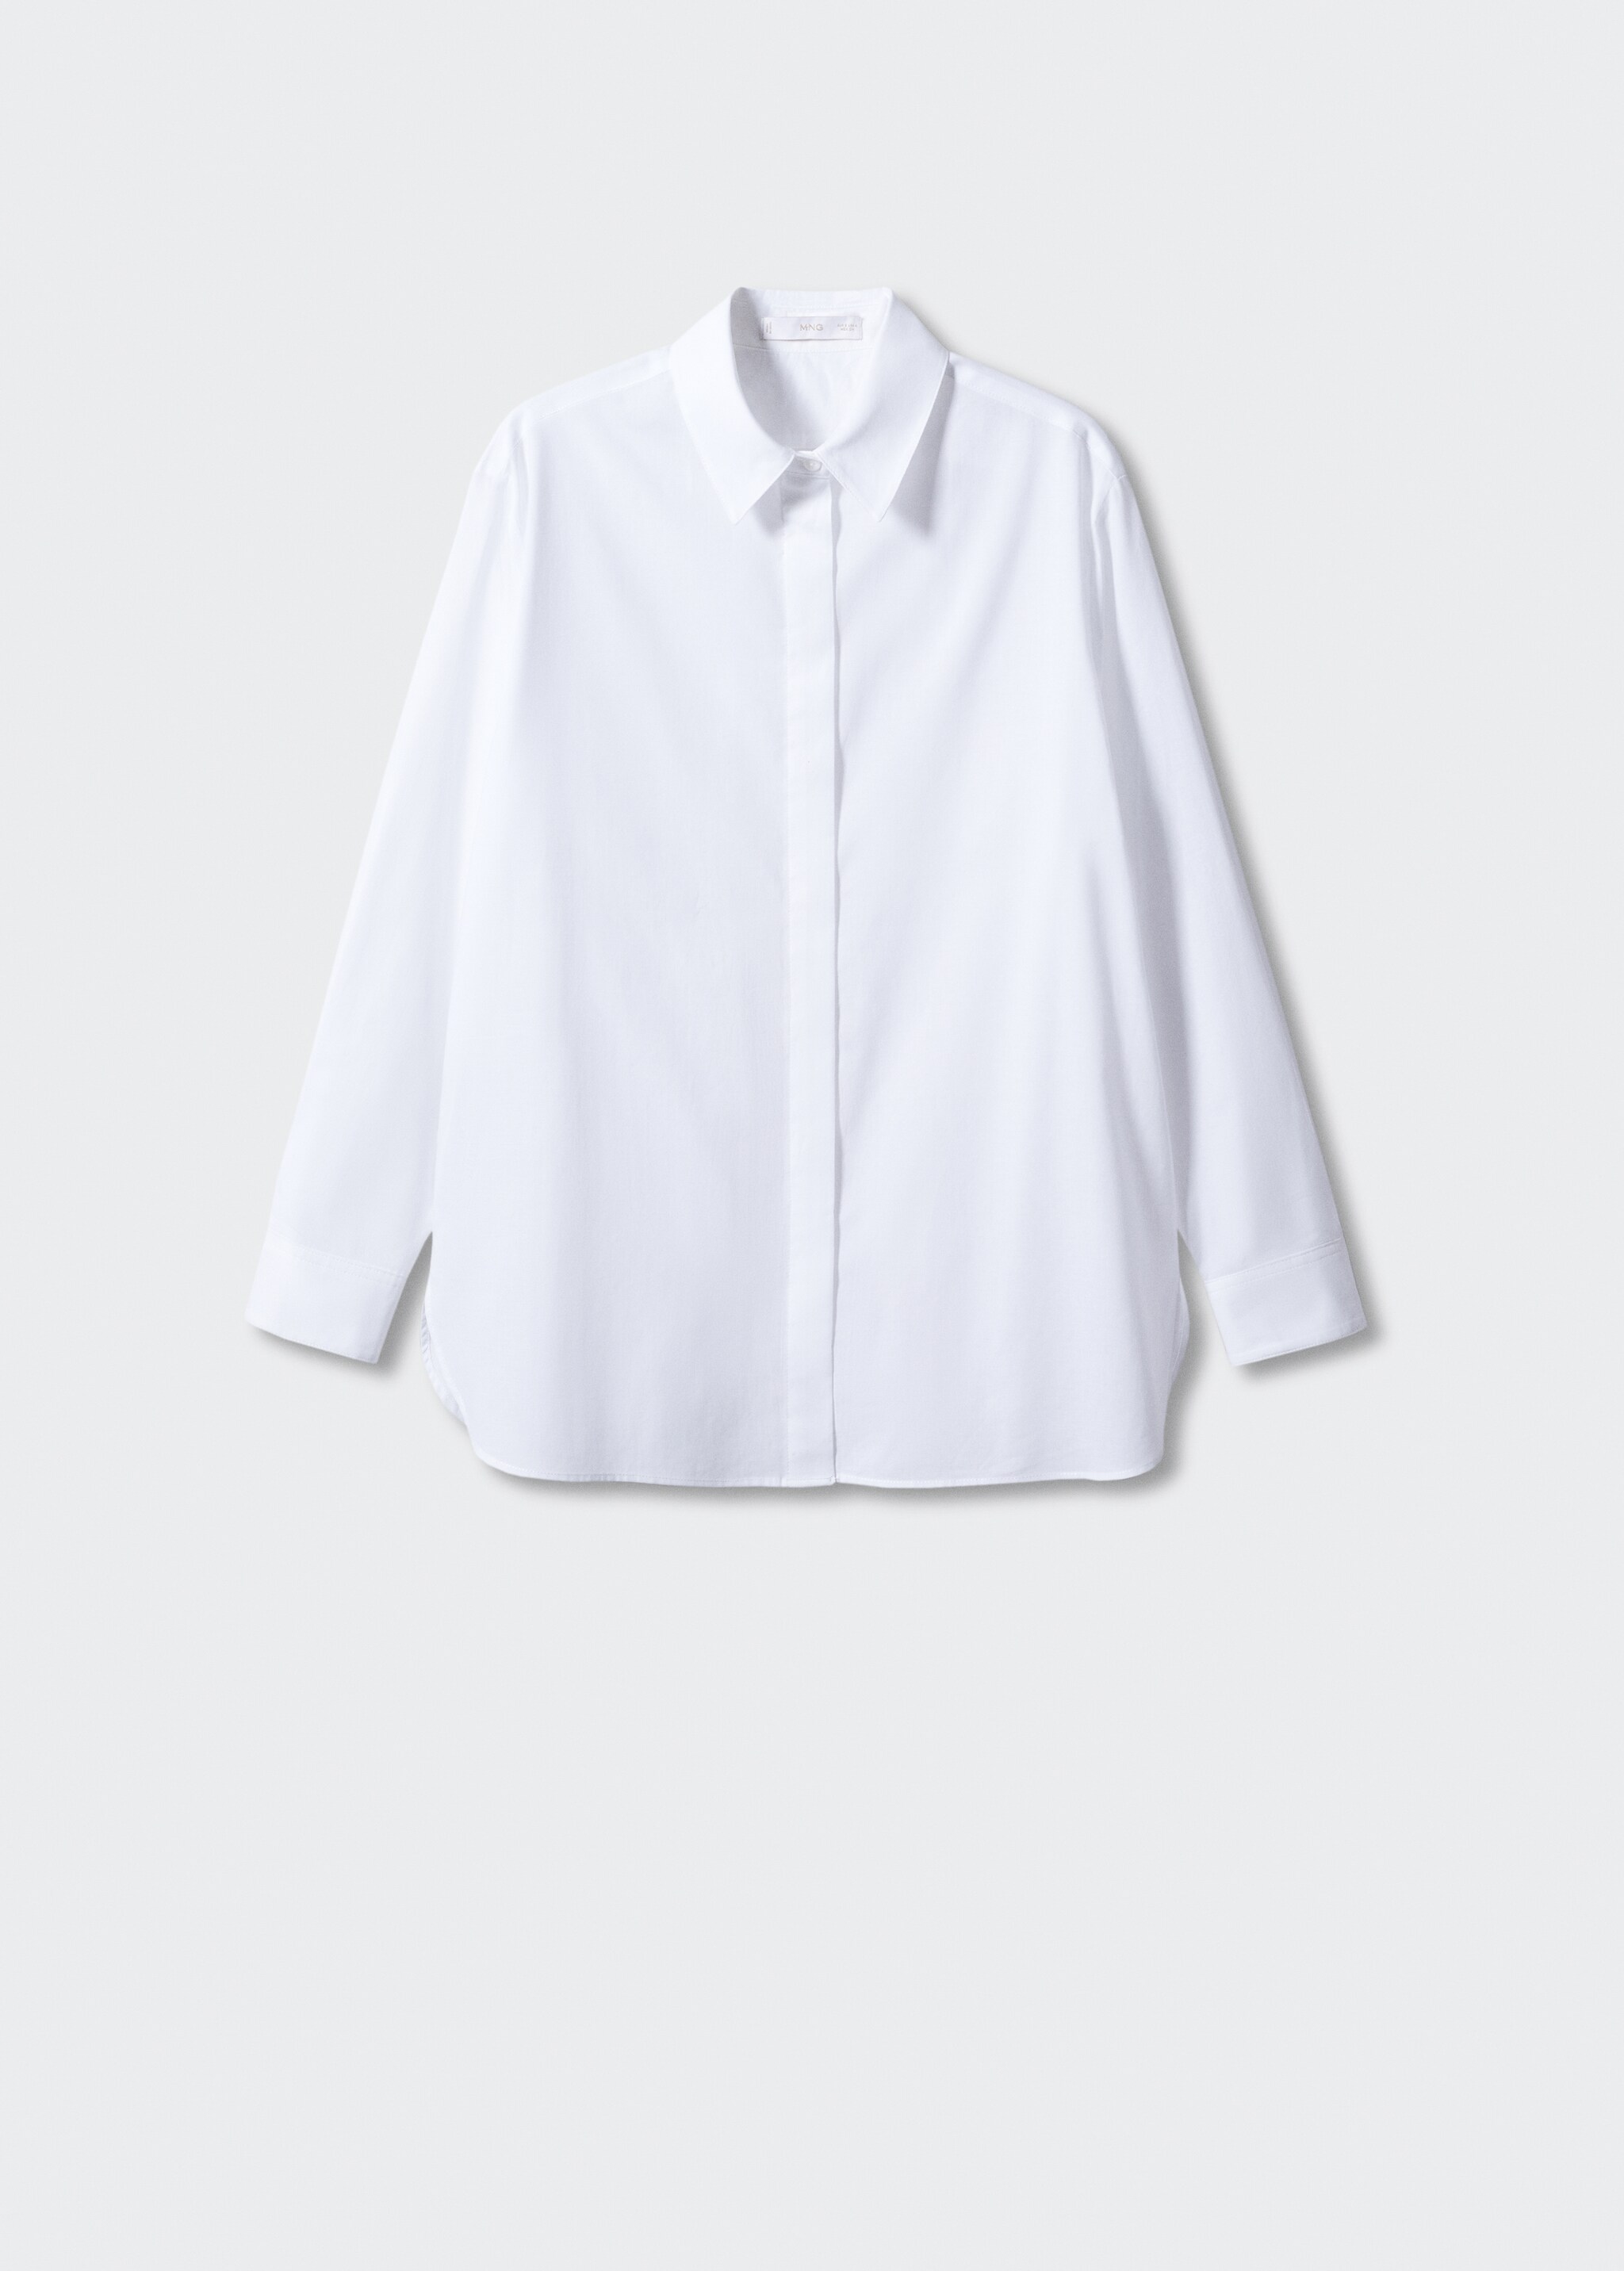 Camisa básica algodón - Artículo sin modelo